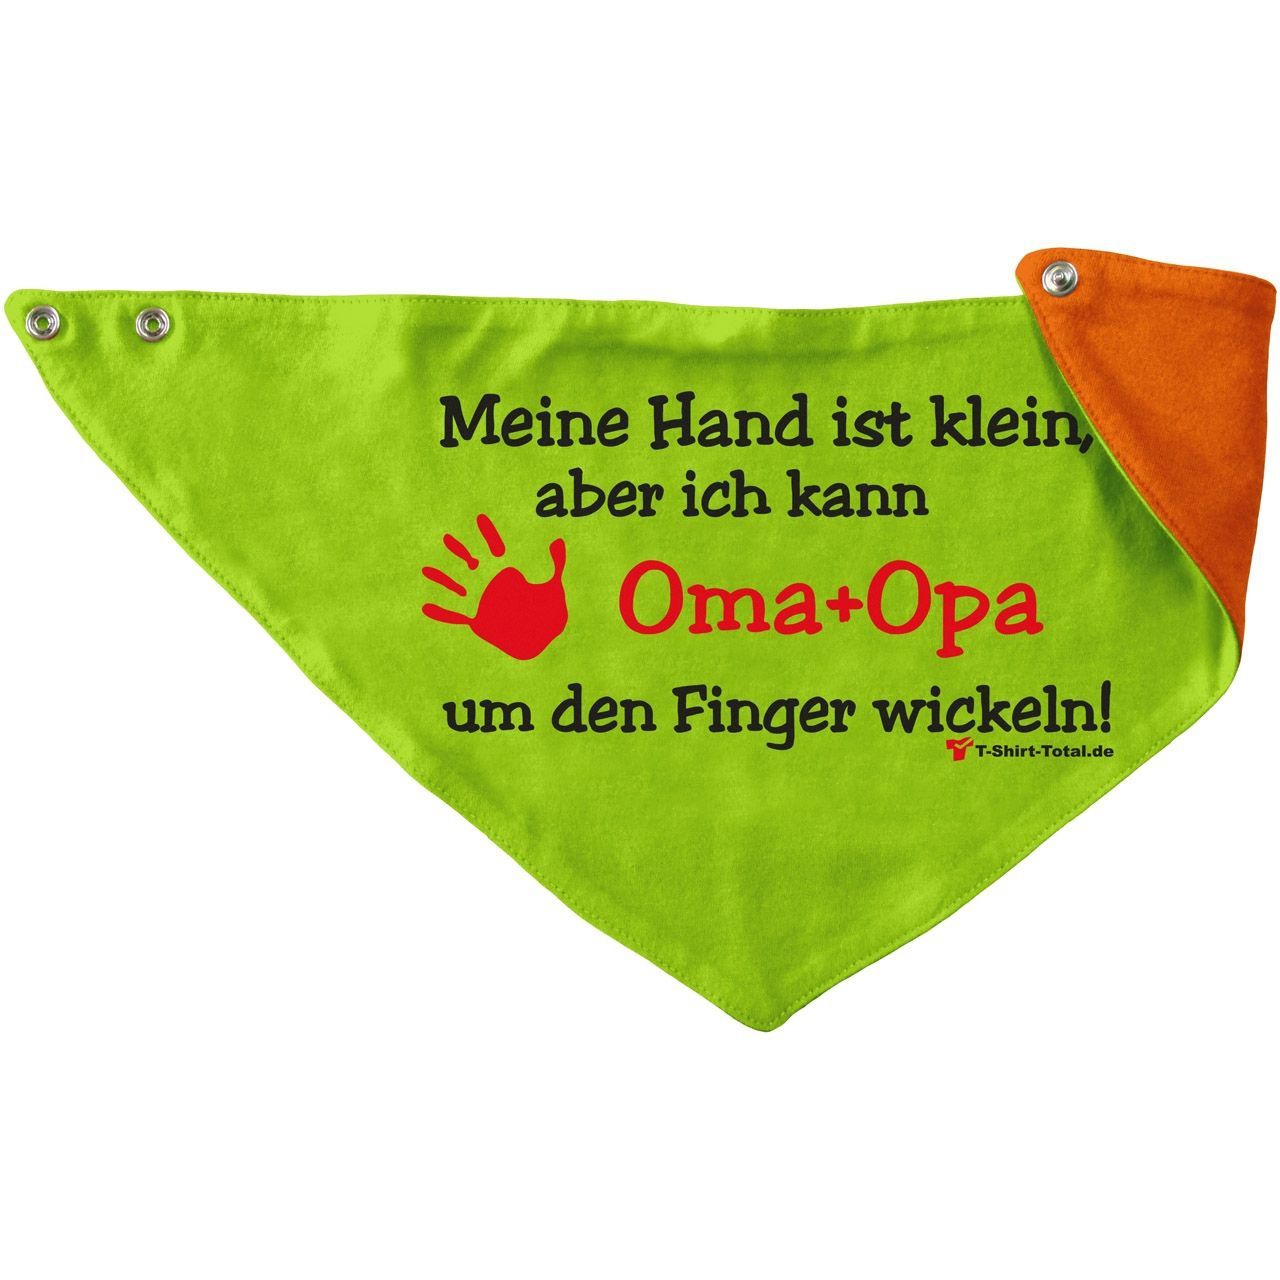 Kleine Hand Oma Opa Kinder Dreieckstuch hellgrün/orange